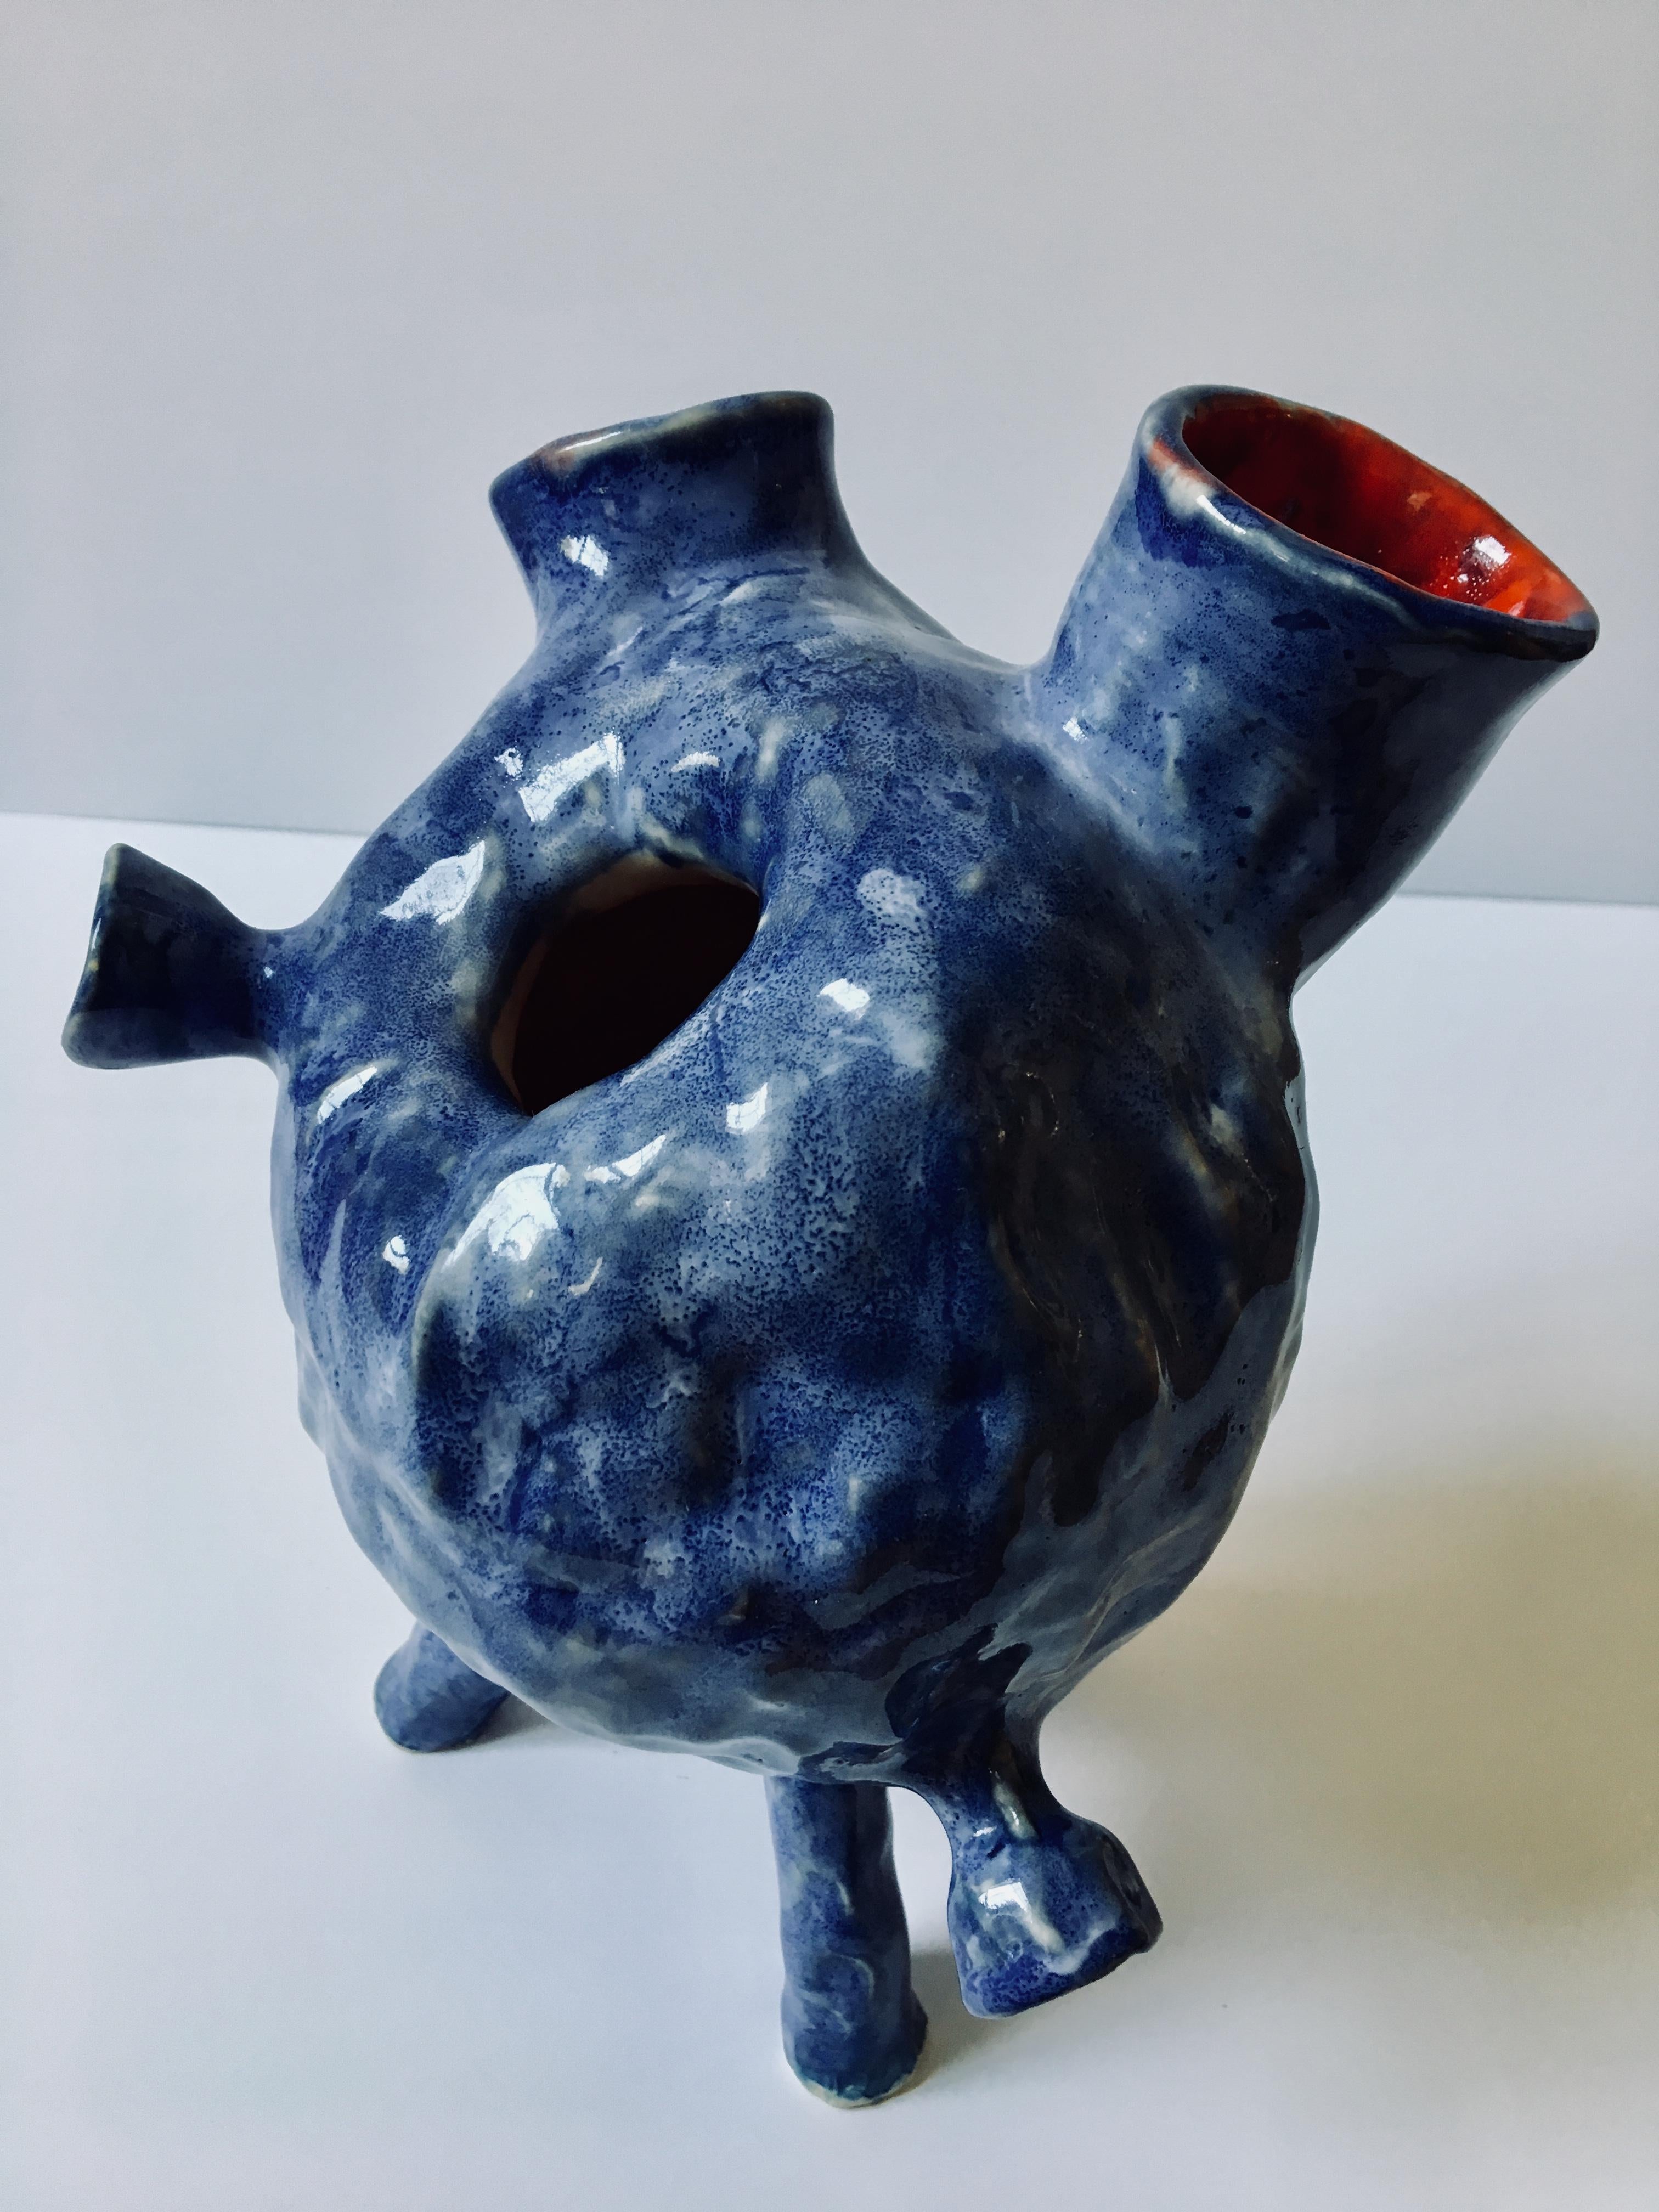 Sculpture ceramic vessel: Creature Medium No 4' 4